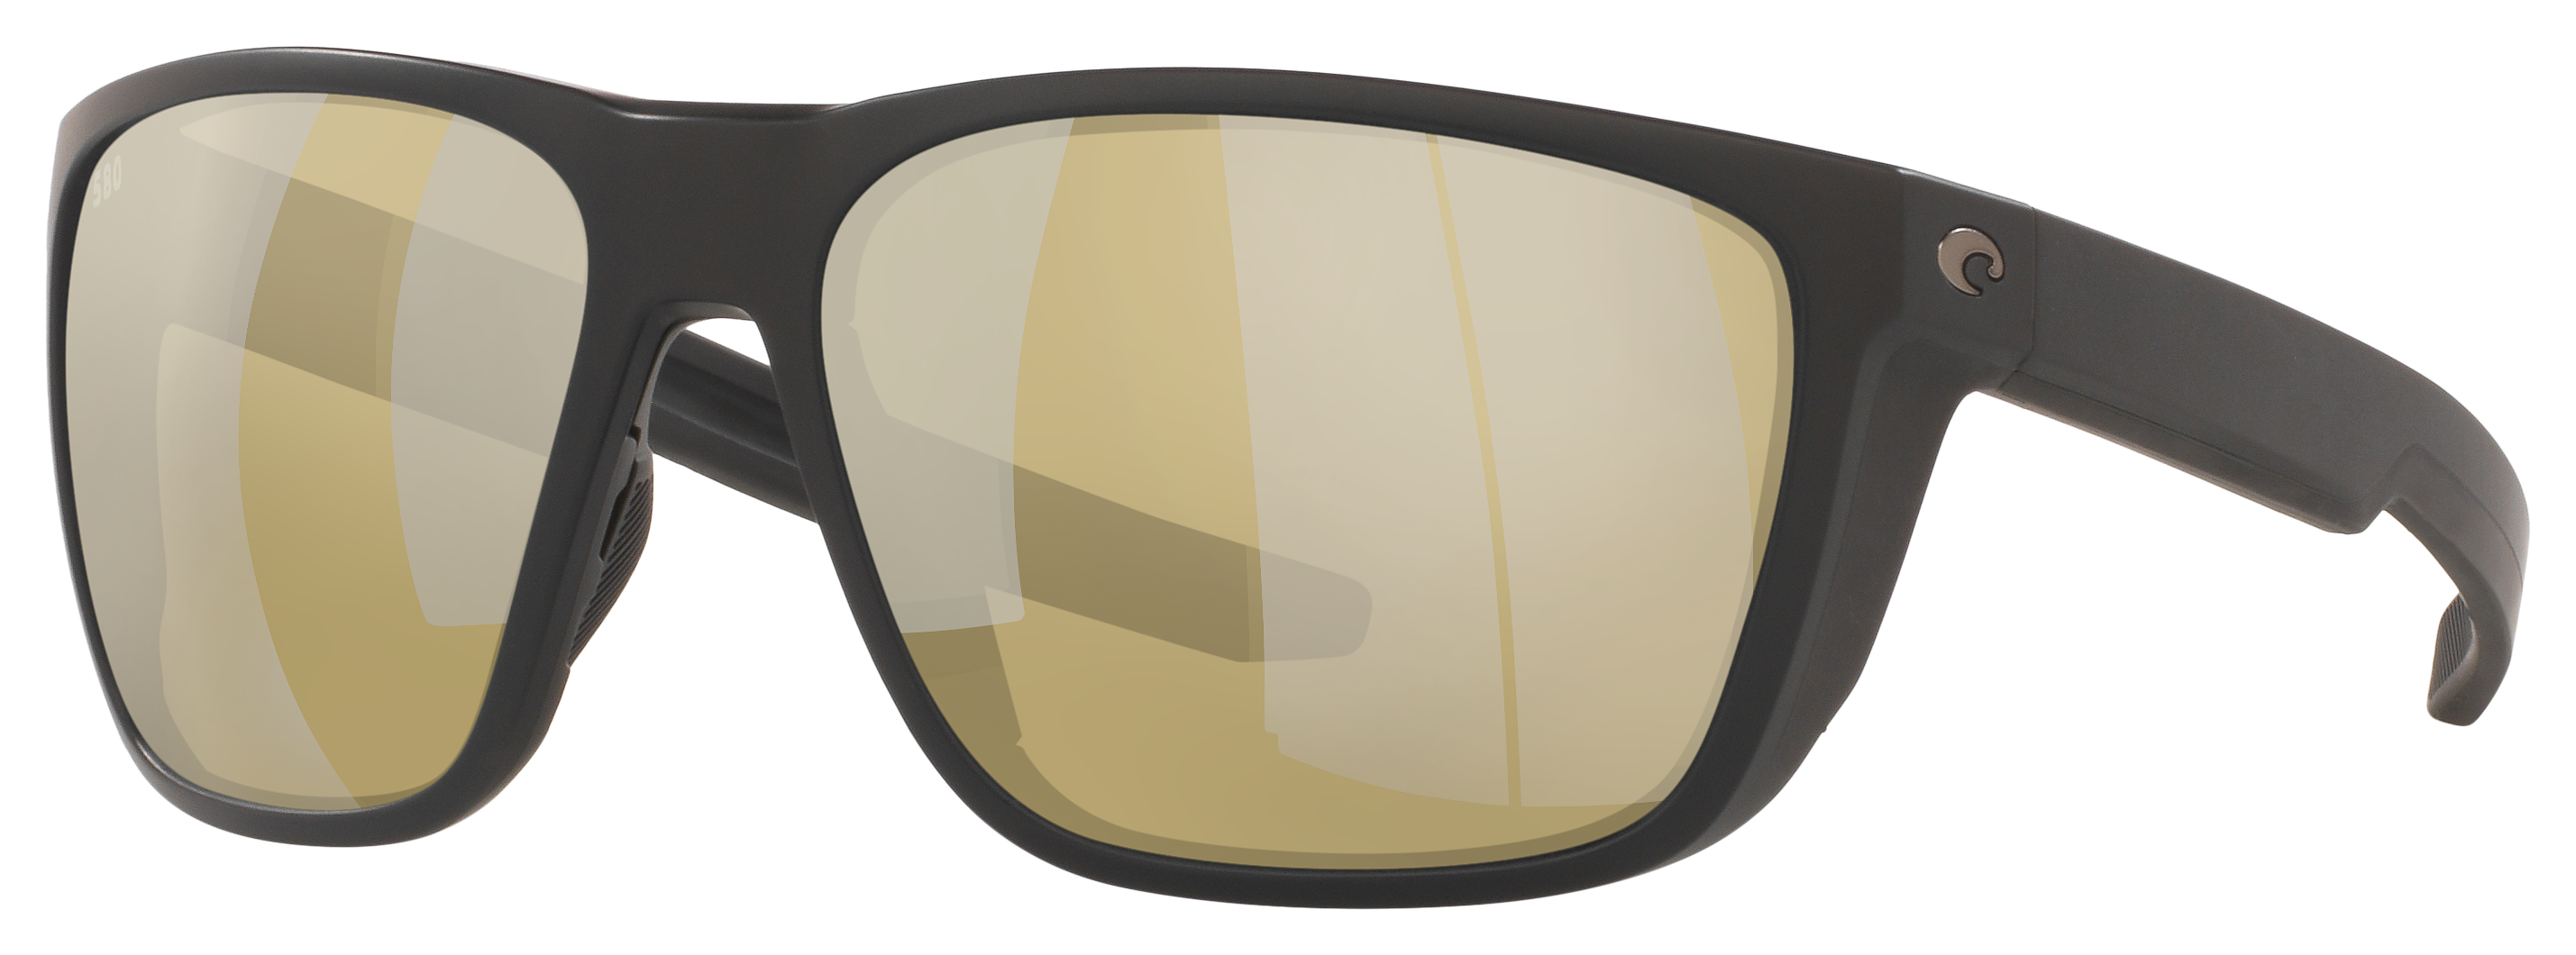 Costa Del Mar Ferg 580G Glass Polarized Sunglasses - Matte Black/Sunrise Silver Mirror - Large